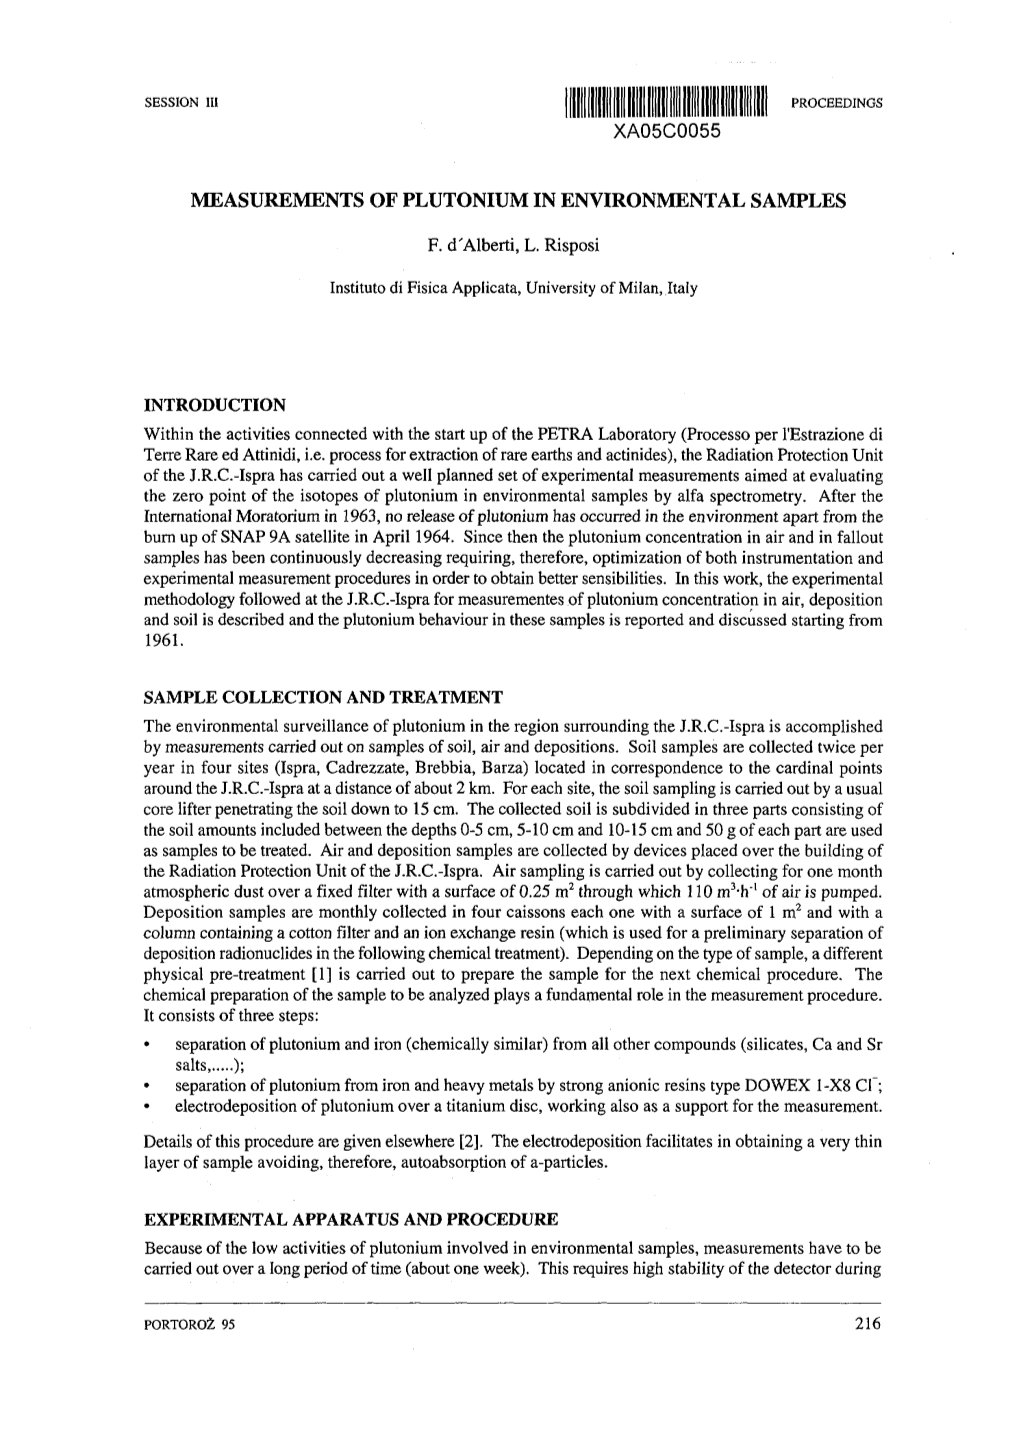 Measurements of Plutonium in Environmental Samples